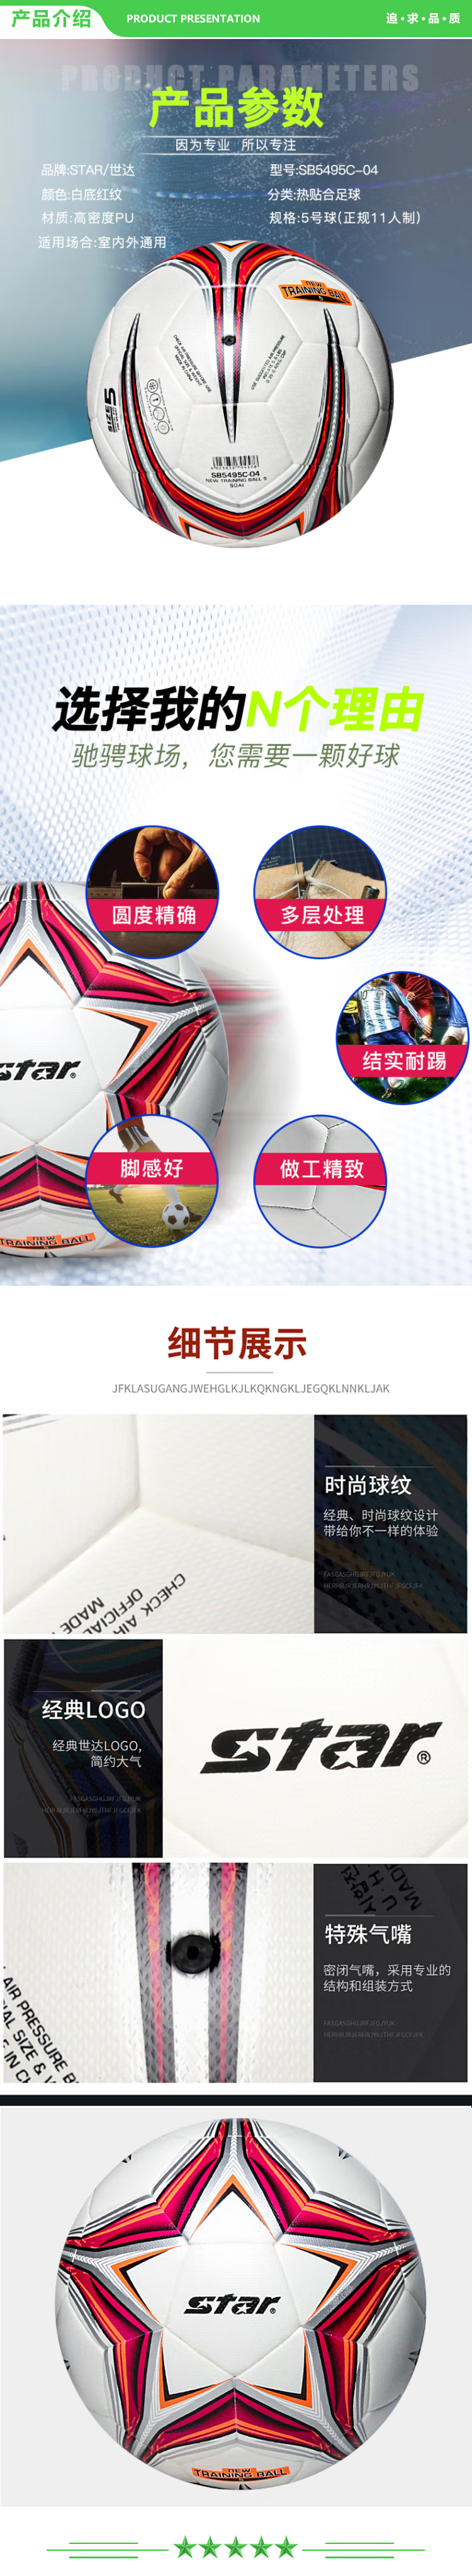 世达 star SB5495C-04 高级橡胶绕线胆热贴合足球 5号 耐磨成人儿童训练竞技用足球比赛用足球  2.jpg